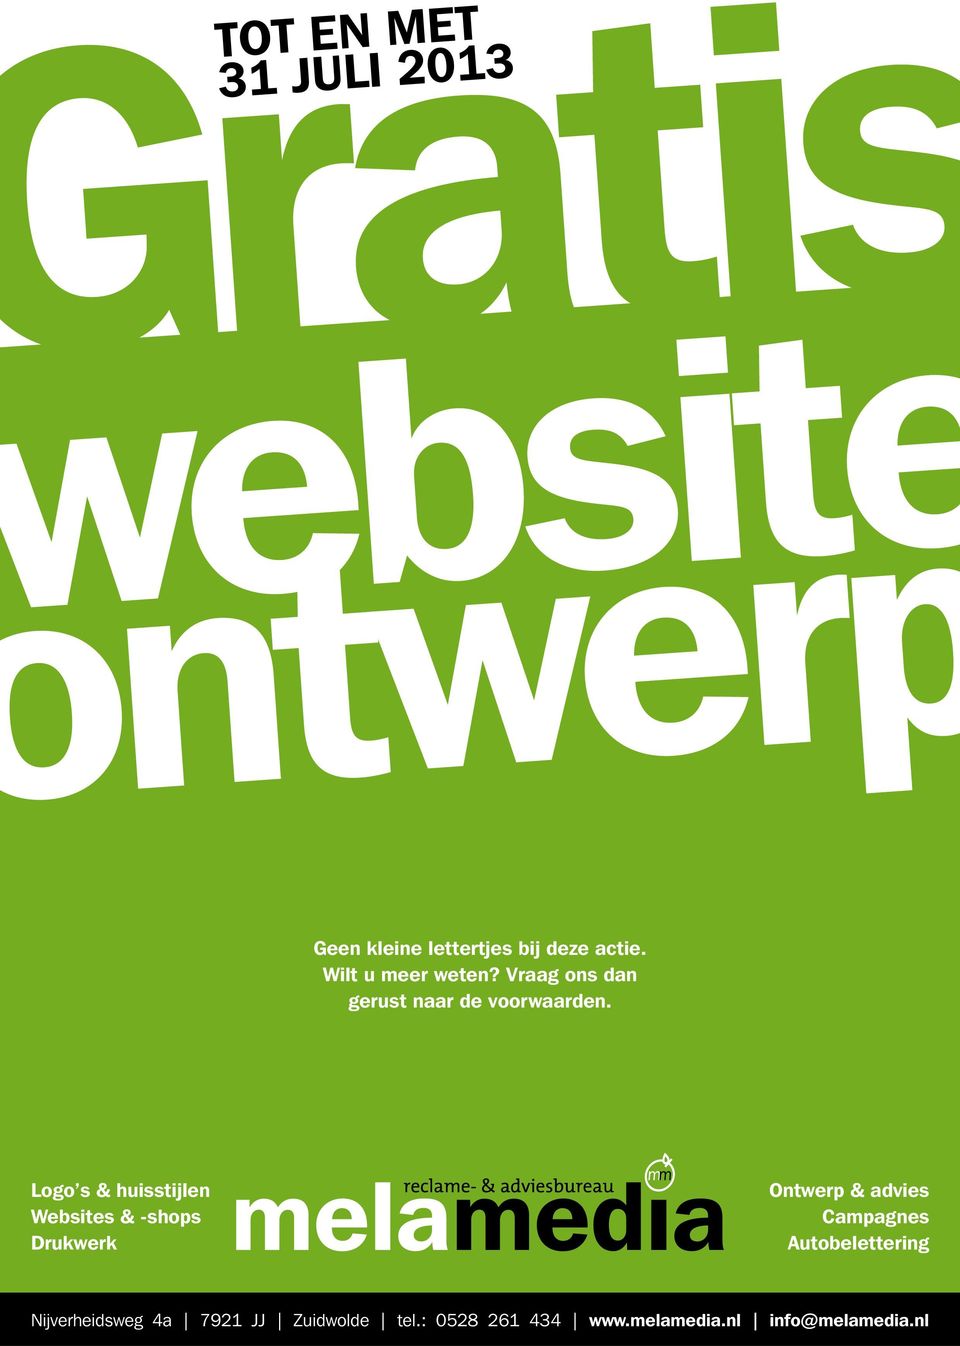 Logo s & huisstijlen Websites & -shops Drukwerk Ontwerp & advies Campagnes